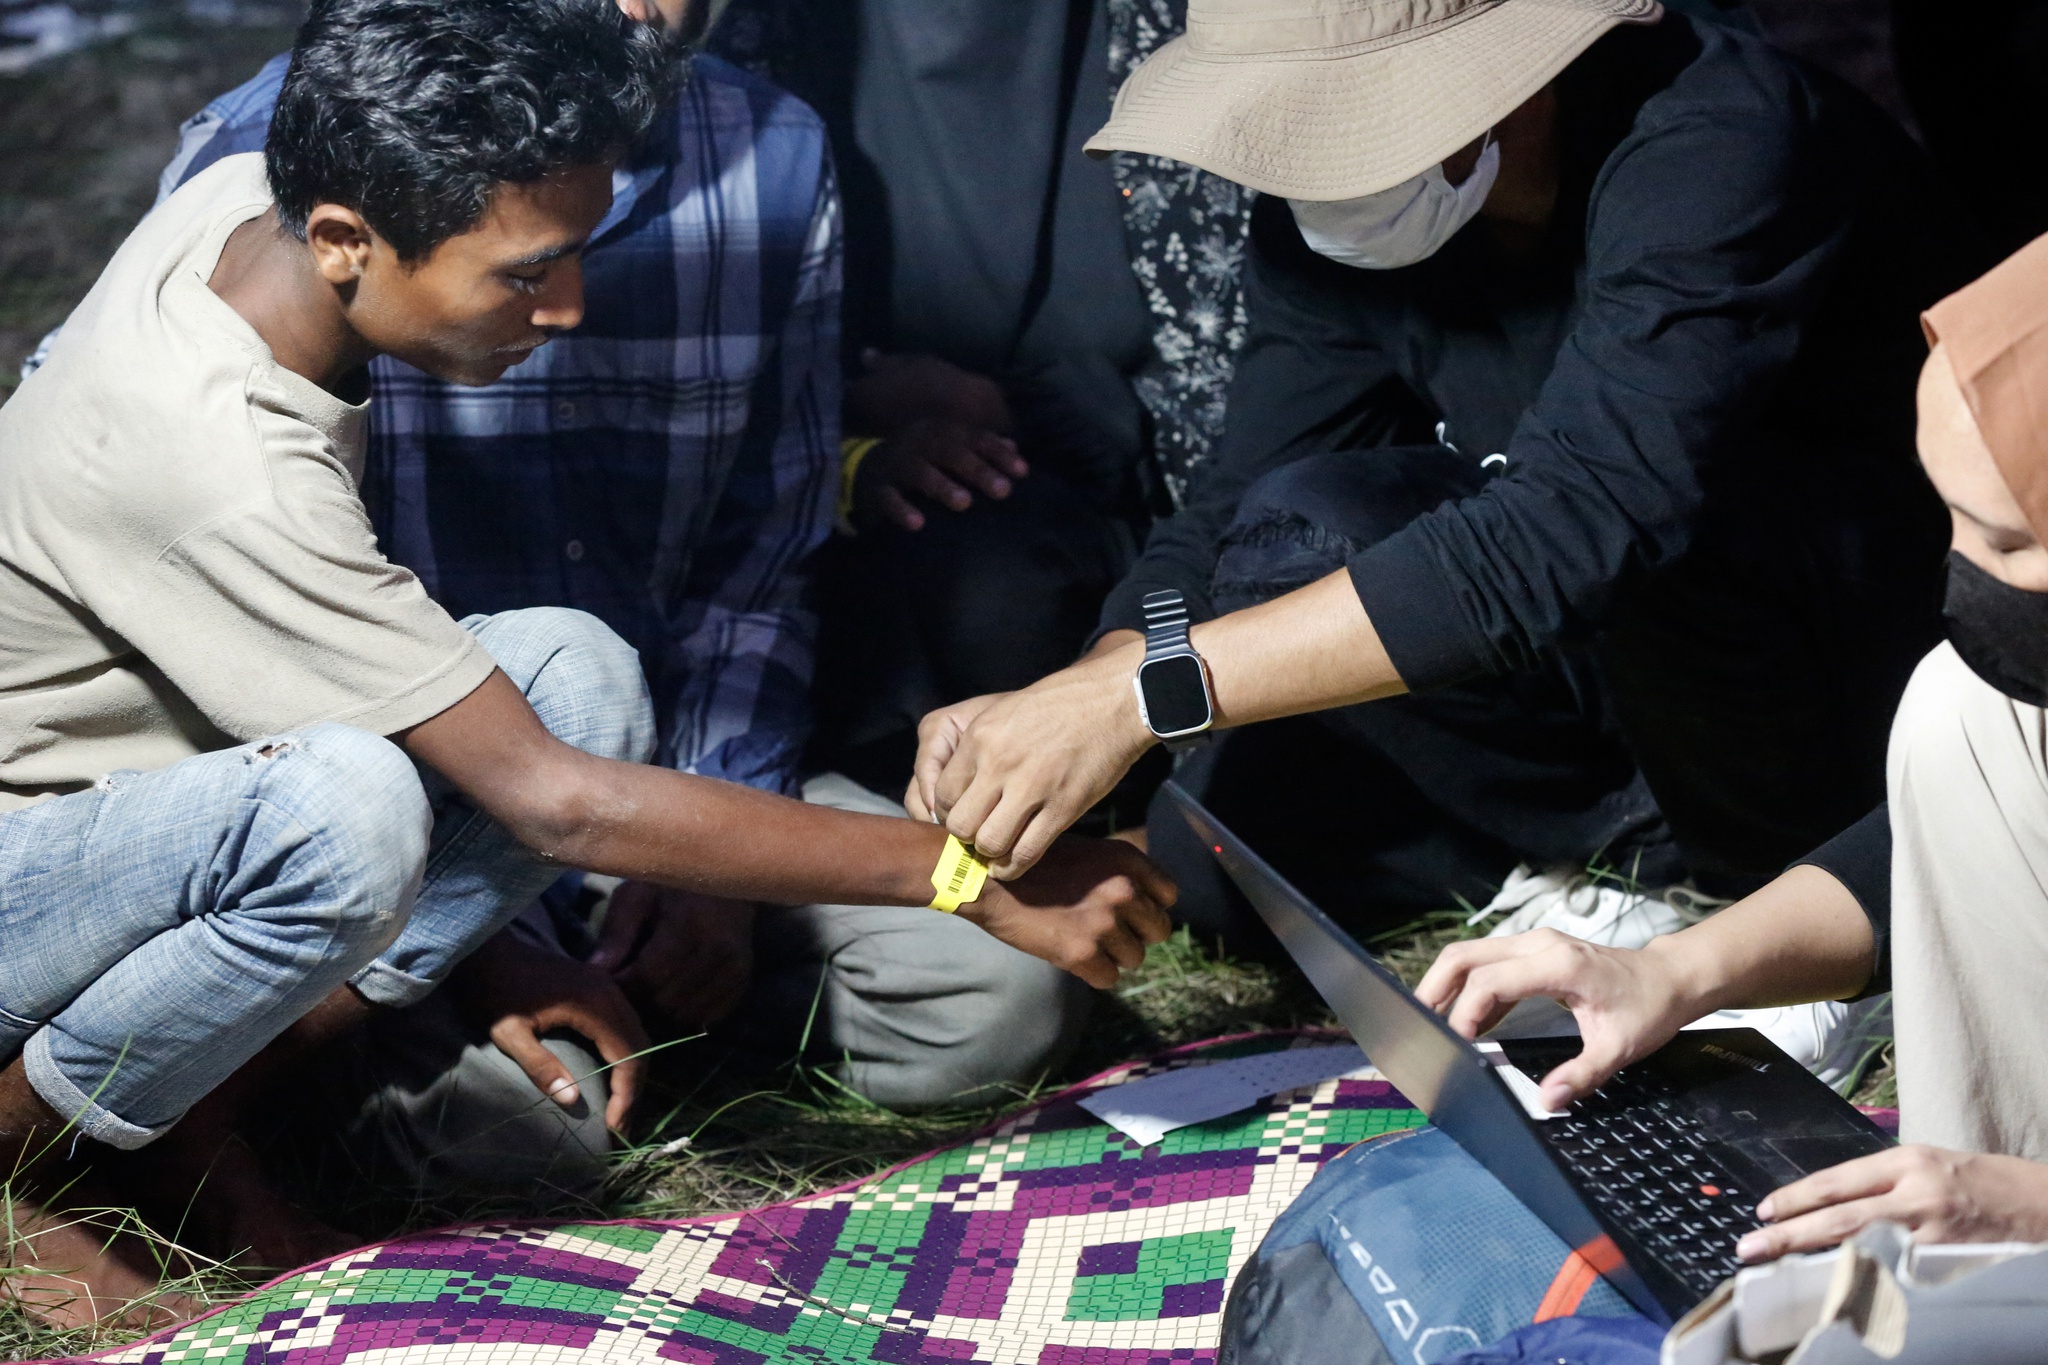 La police malaisienne capture 41 réfugiés rohingyas qui se sont évadés d’un centre de détention |  Réfugiés